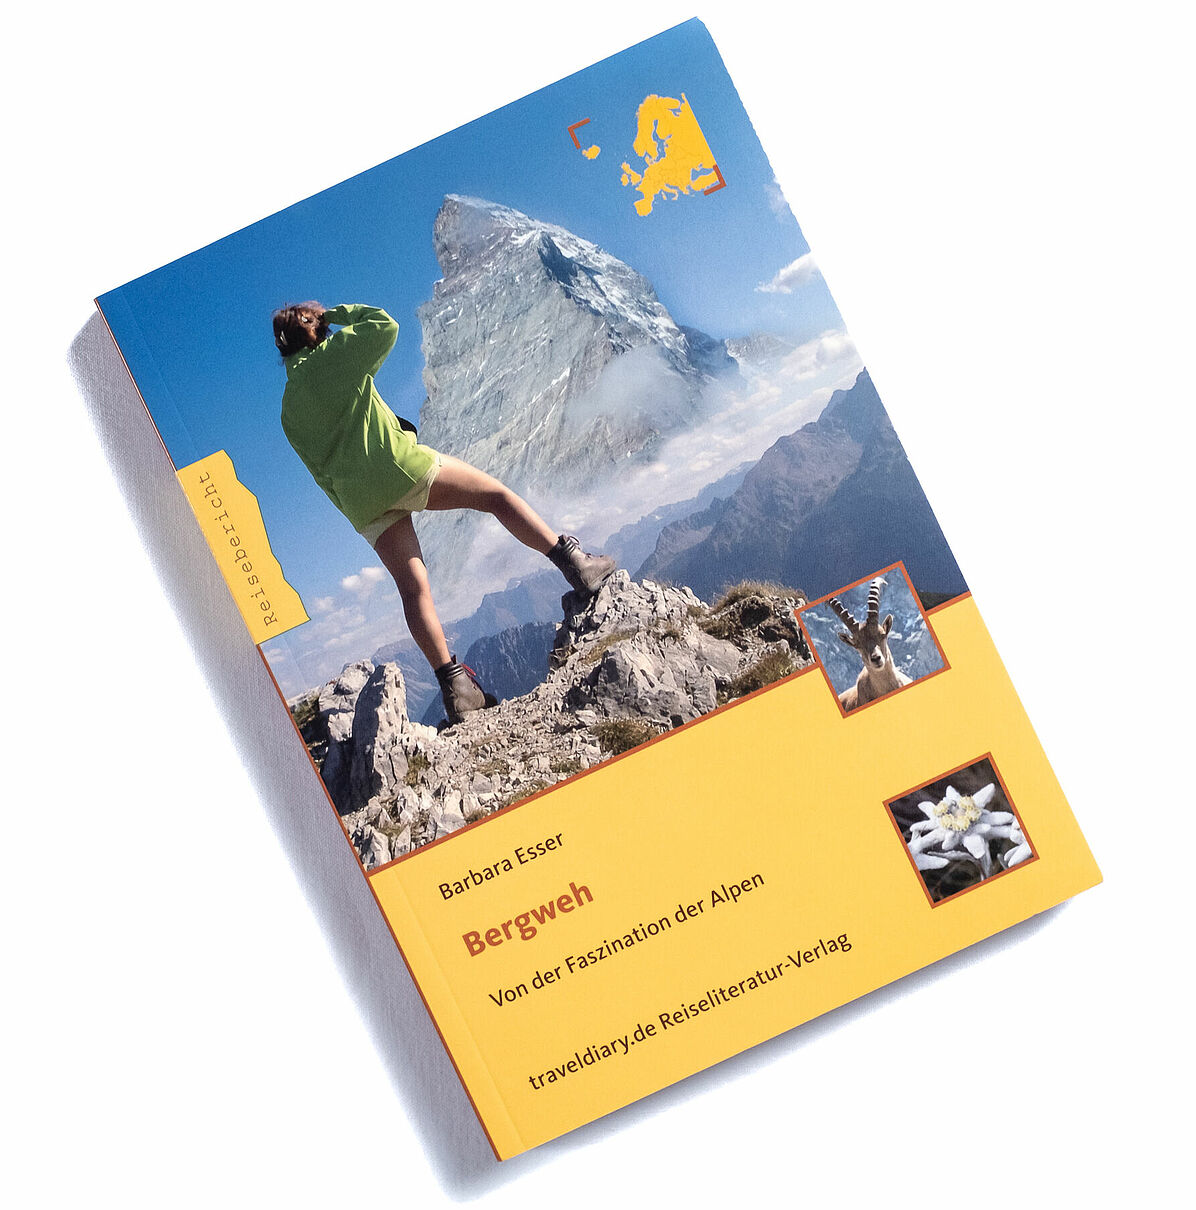 Bergweh®, Ueber die Faszination der Alpen, Buch, Berge, Alpen, 